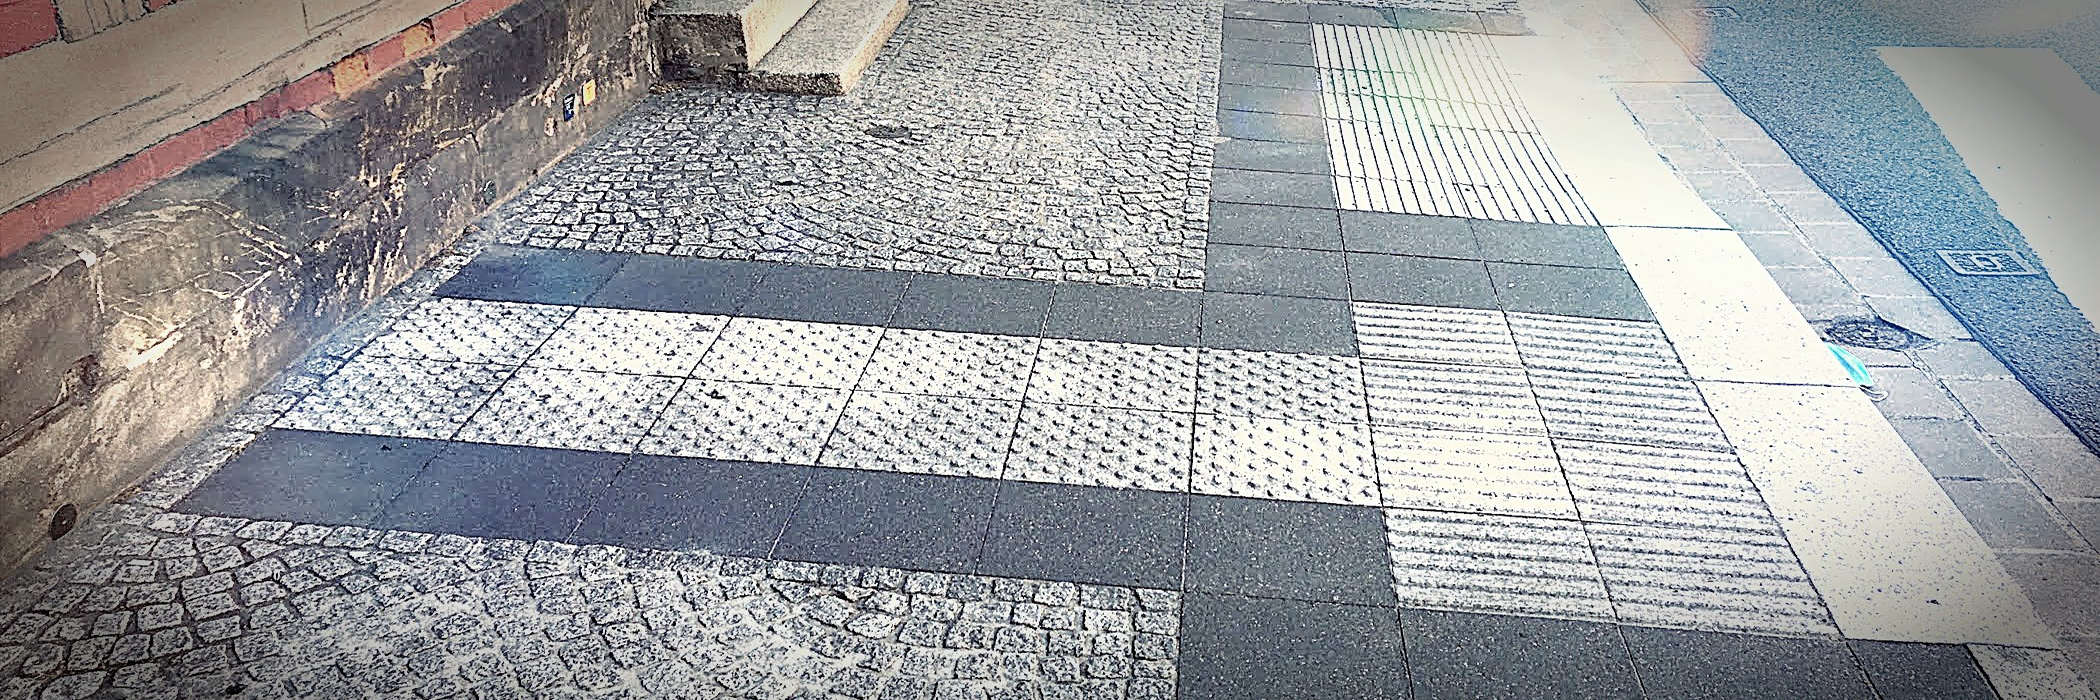 Teil eines Blindenleitsystems auf einem Fußweg: Das Blindenleitsystem zeigt an, wo Menschen die Straße sicher überqueren können